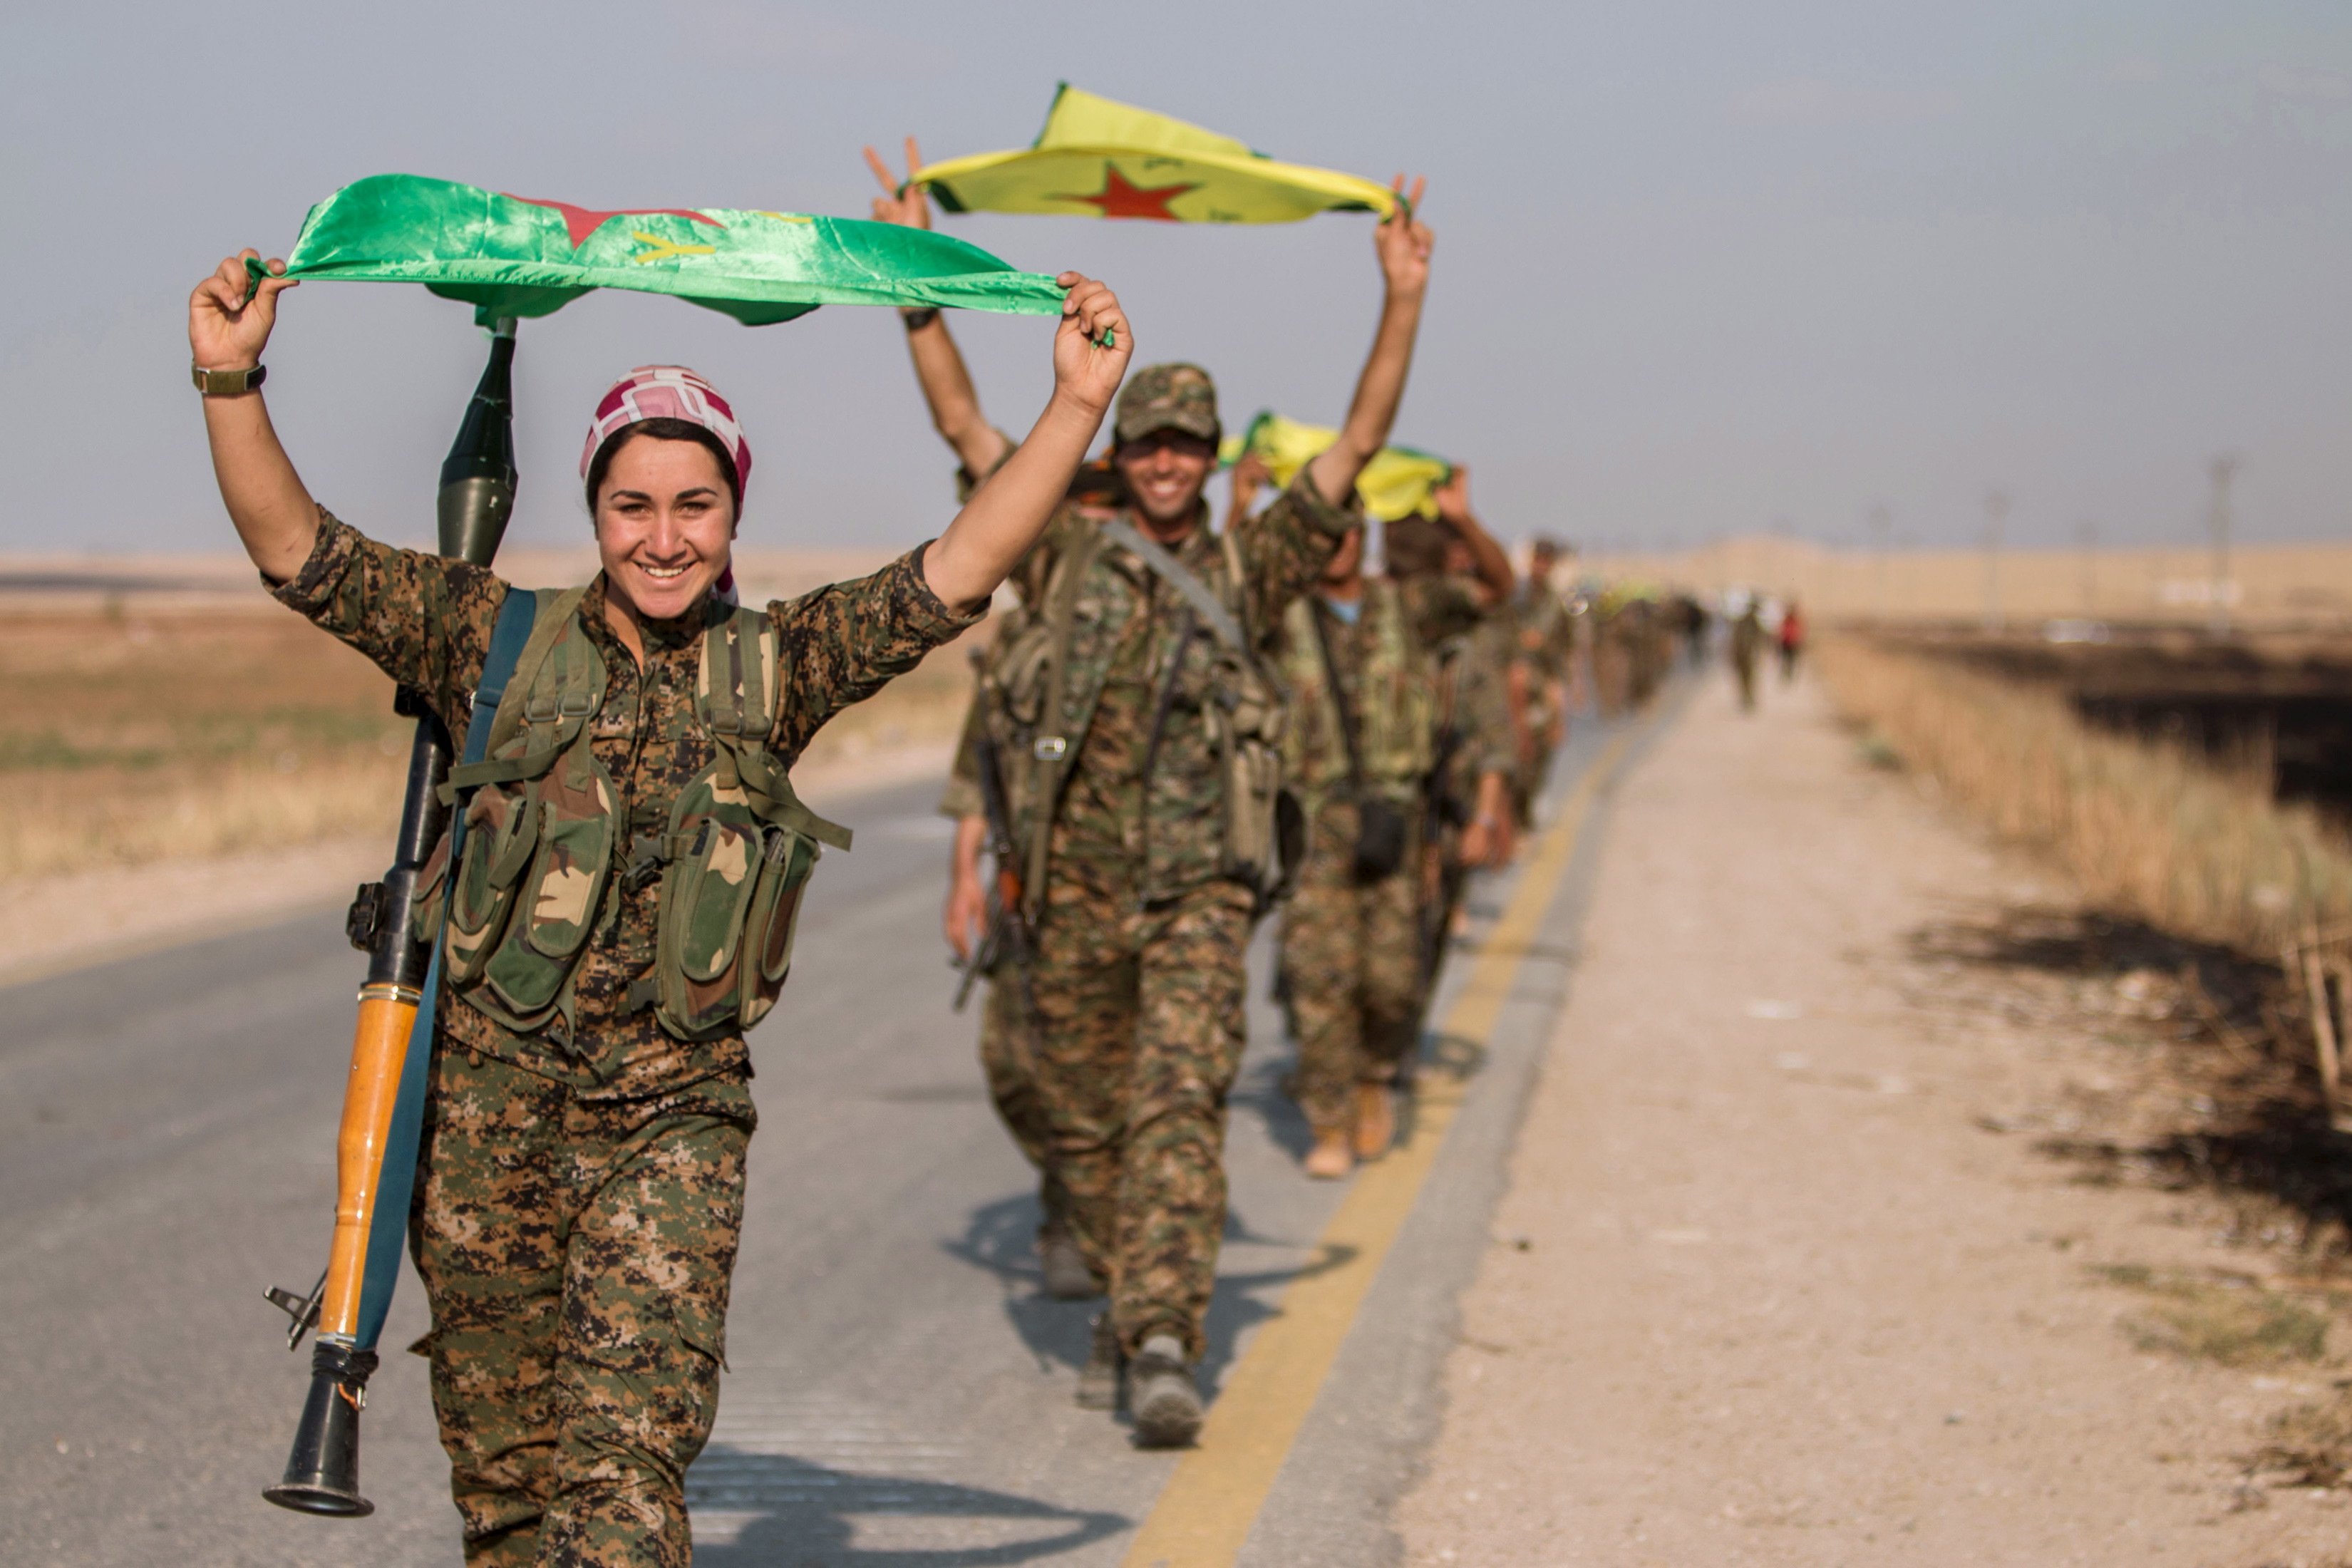 库尔德女兵参战让极端分子十分胆寒,对他们构成心理上的威胁,因为受